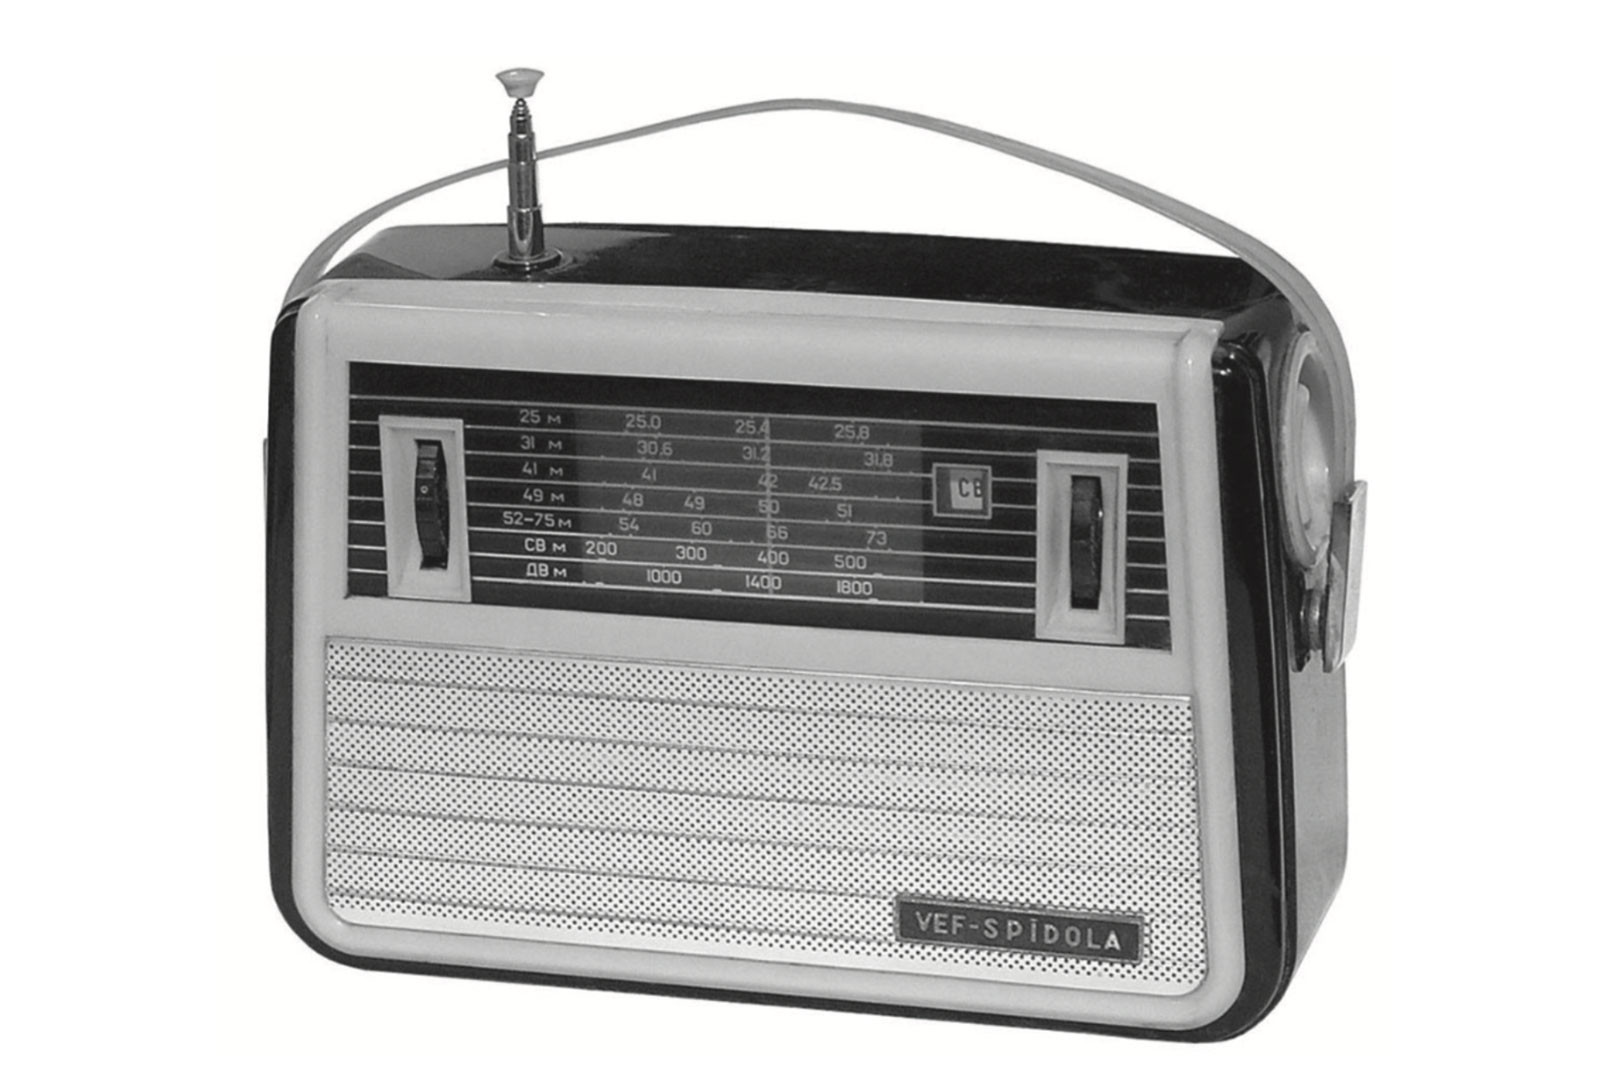 Коротковолновый радиоприемник «ВЭФ-Спидола» (Рижский радиозавод, начало выпуска&nbsp;— 1960&nbsp;г.)